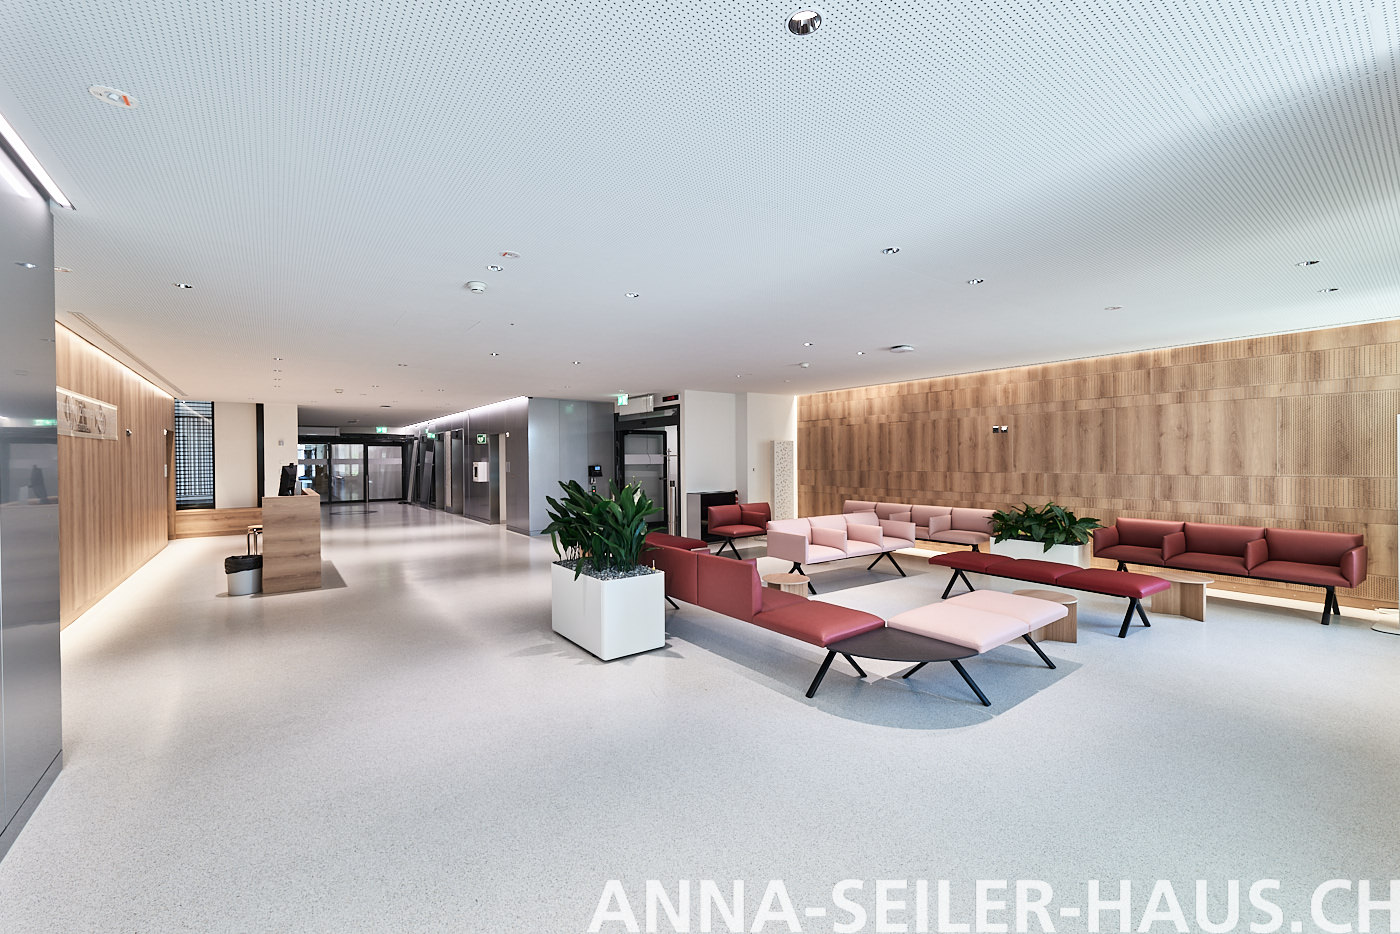 20230907-Anna-Seiler-Haus-010-screenjpg